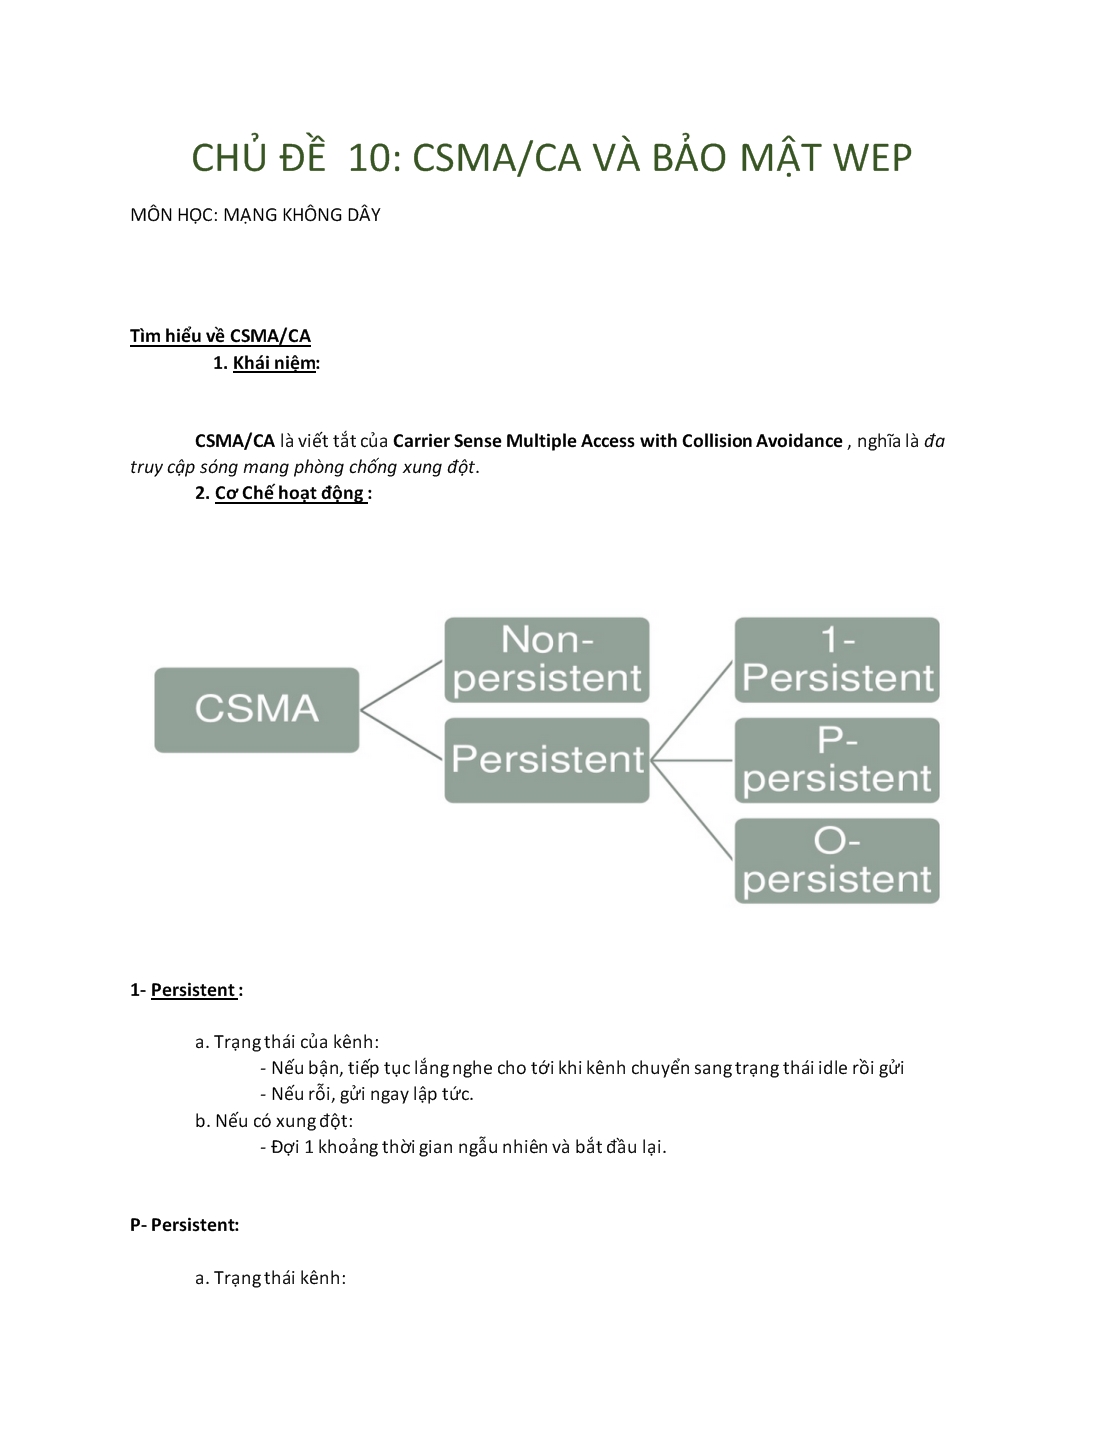 CSMA/CA và bảo mật WEP trang 1